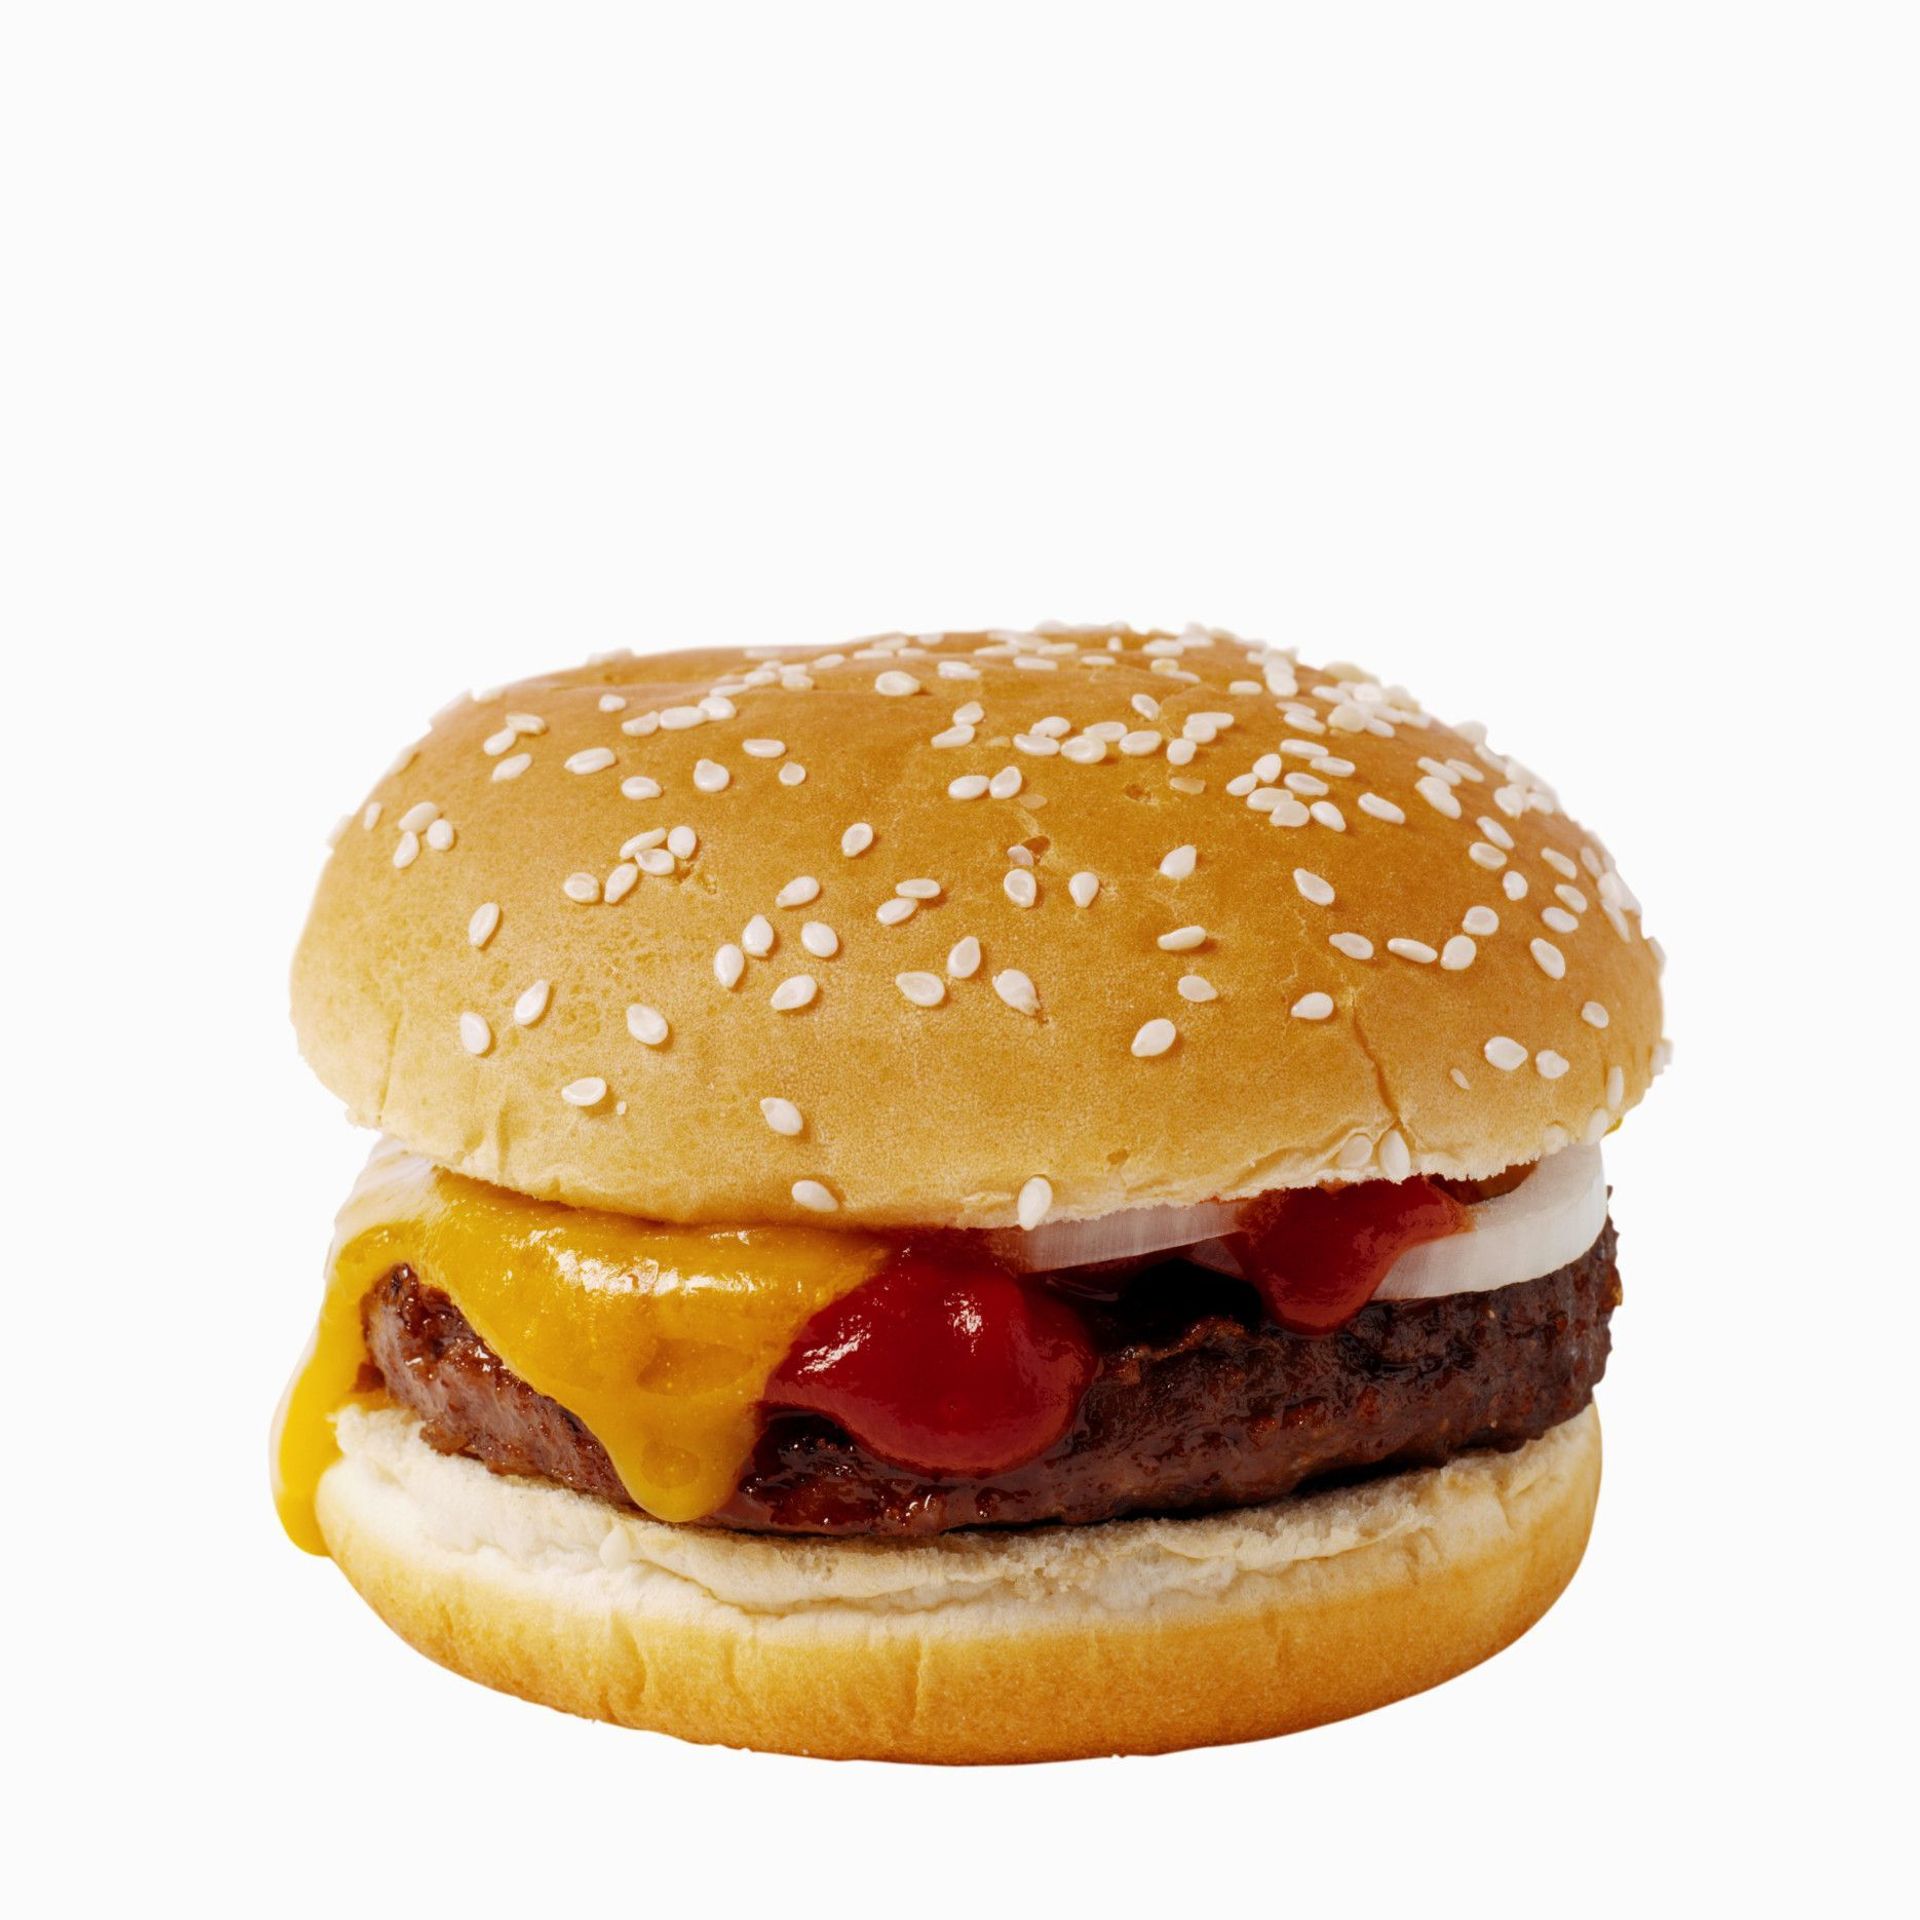 Potraviny - Cheeseburger - Galerie - potraviny (14/18)